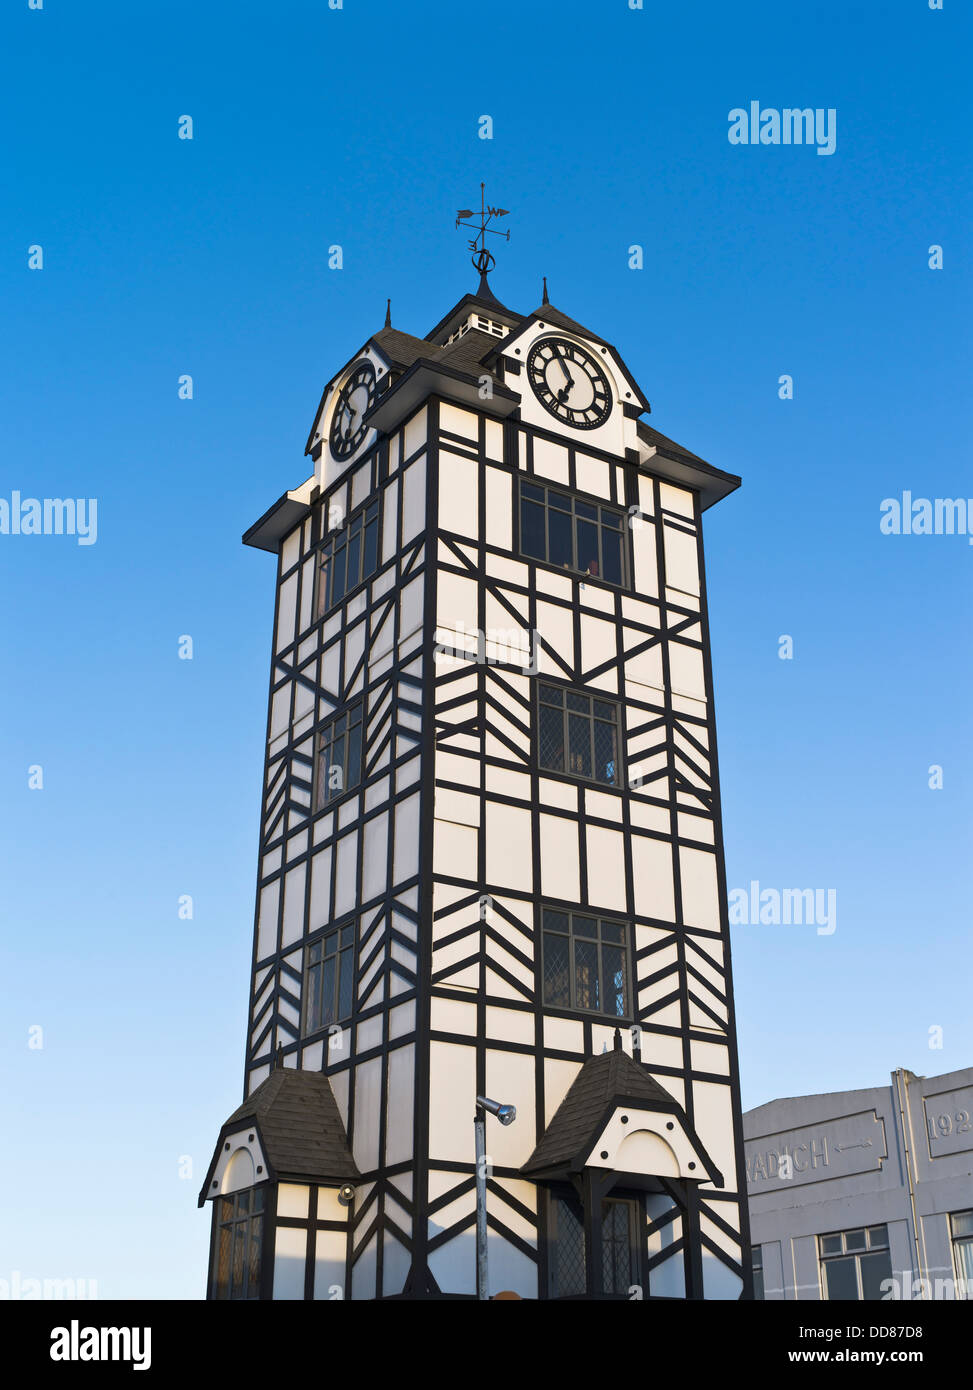 dh Strafford TARANAKI NEW ZEALAND Pseudo Tudor style town clock tower Stock Photo